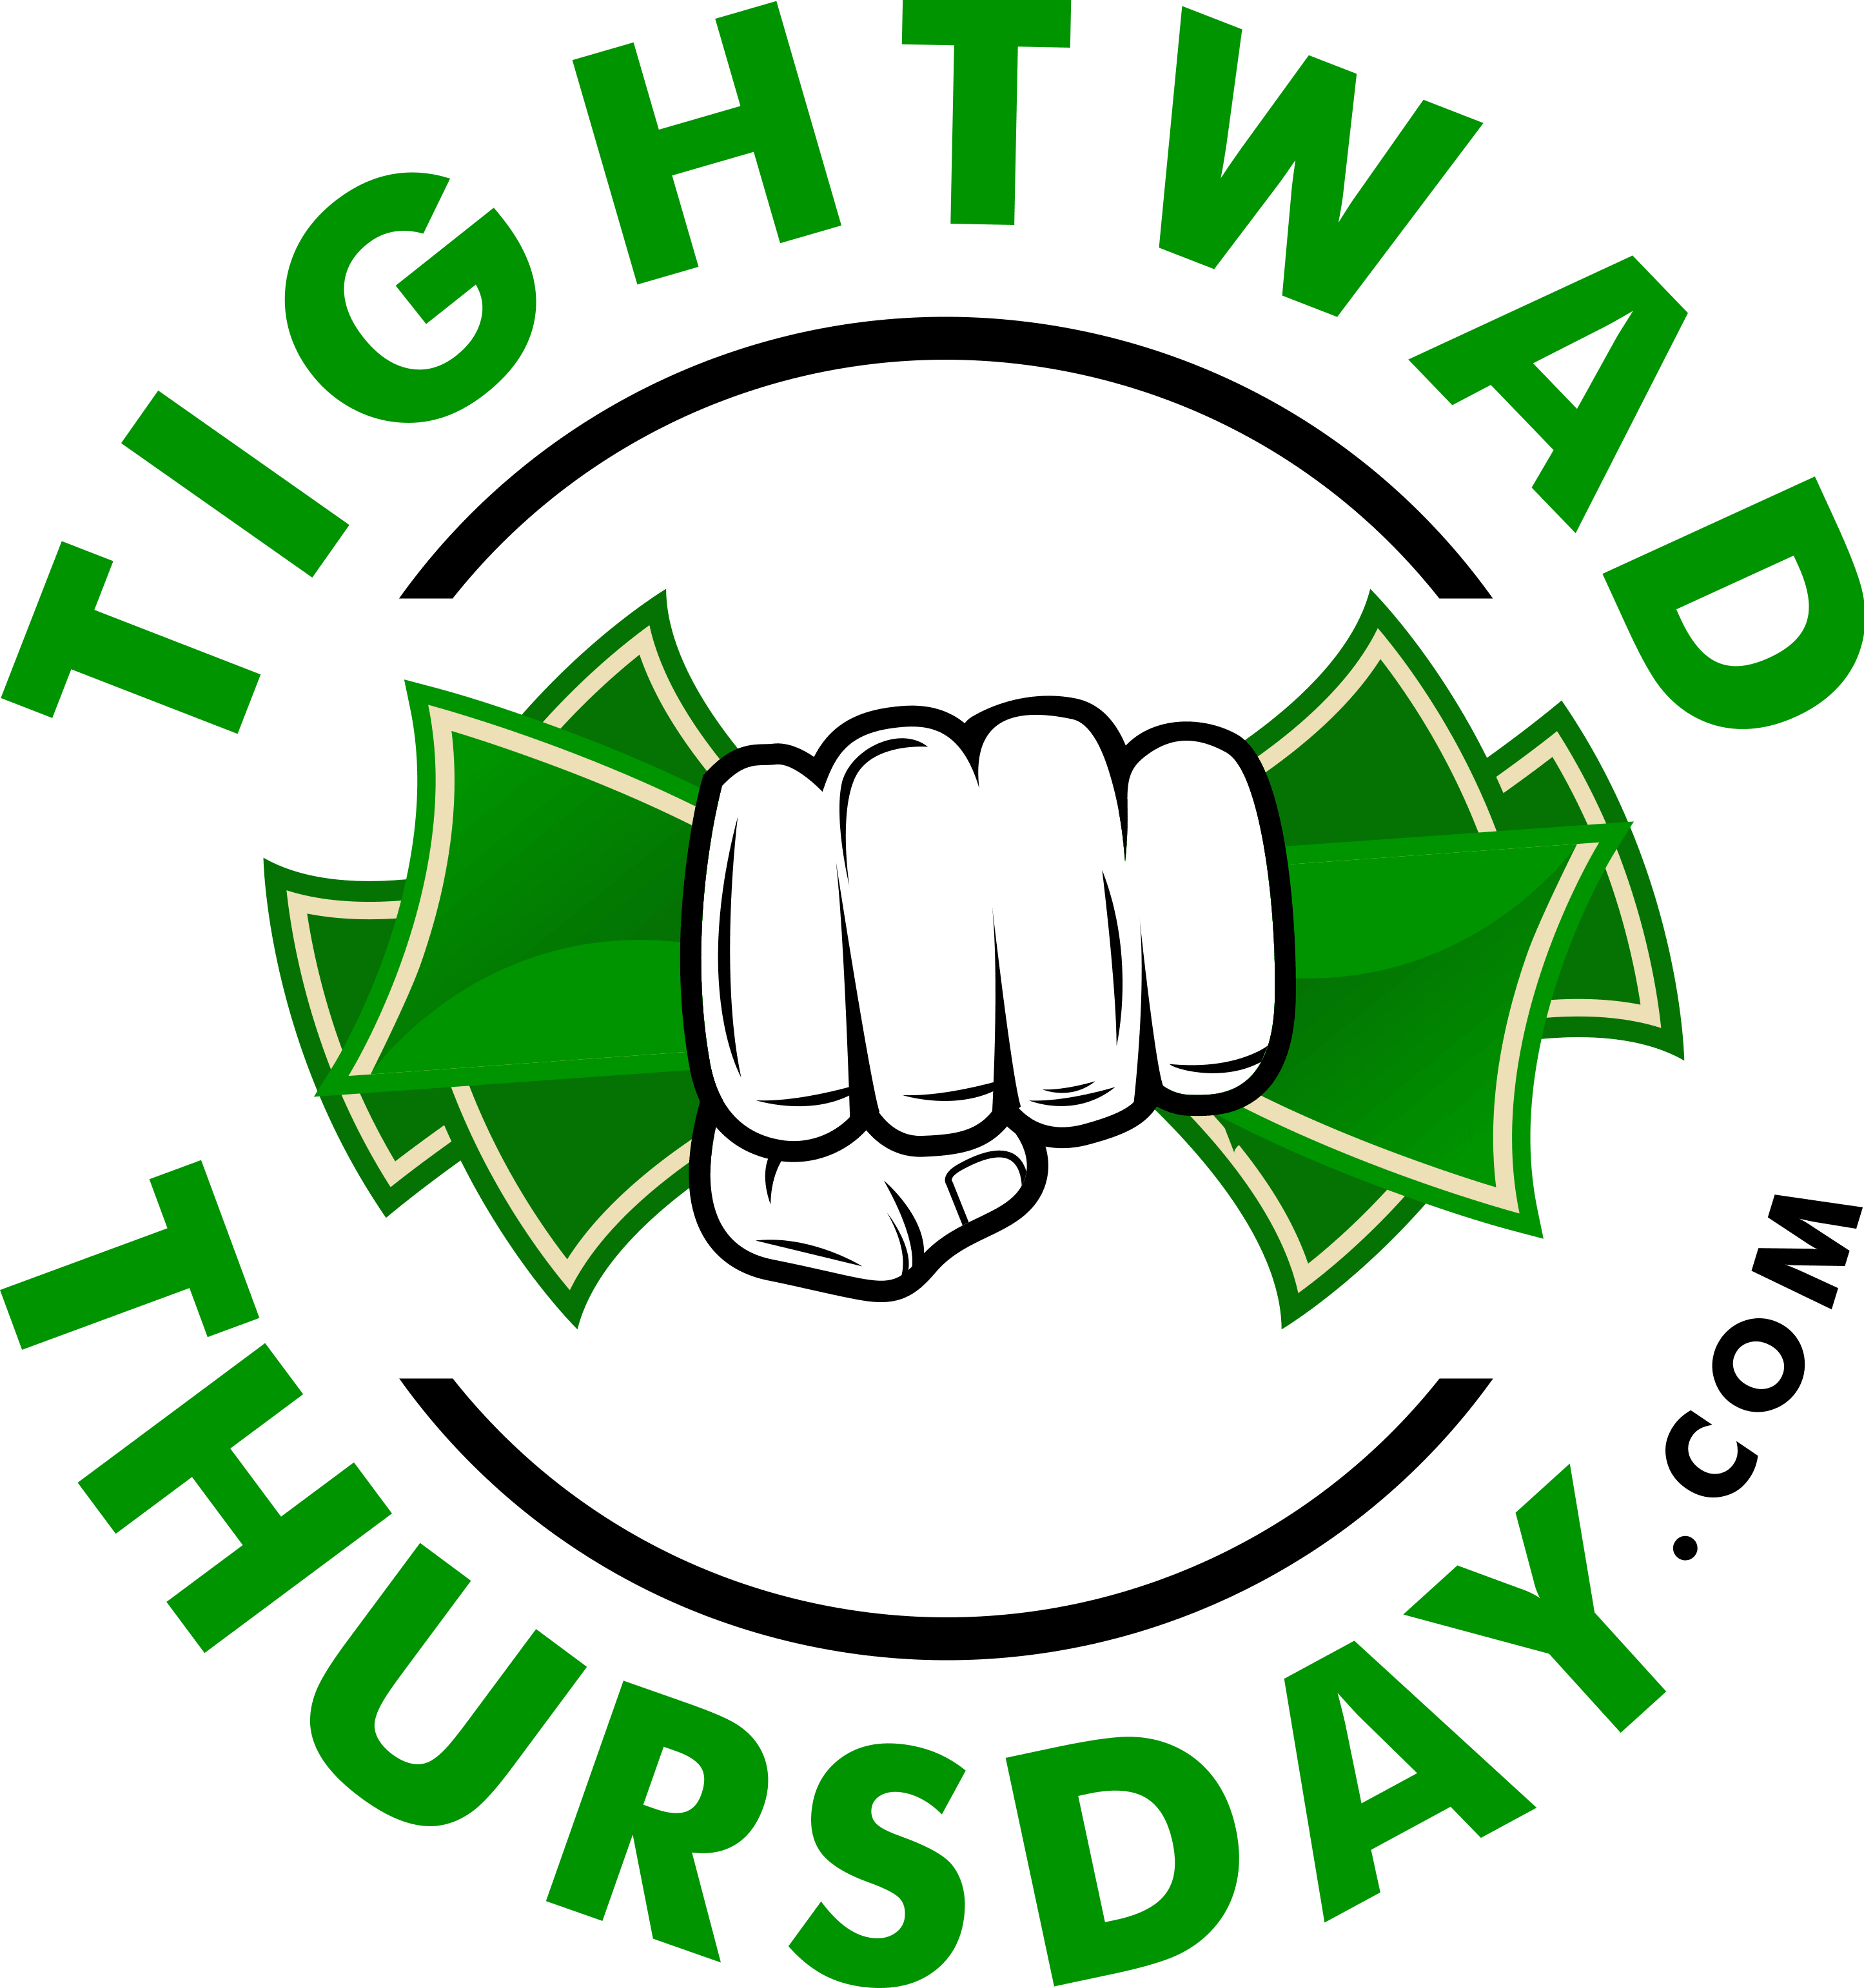 Tightwad Thursday